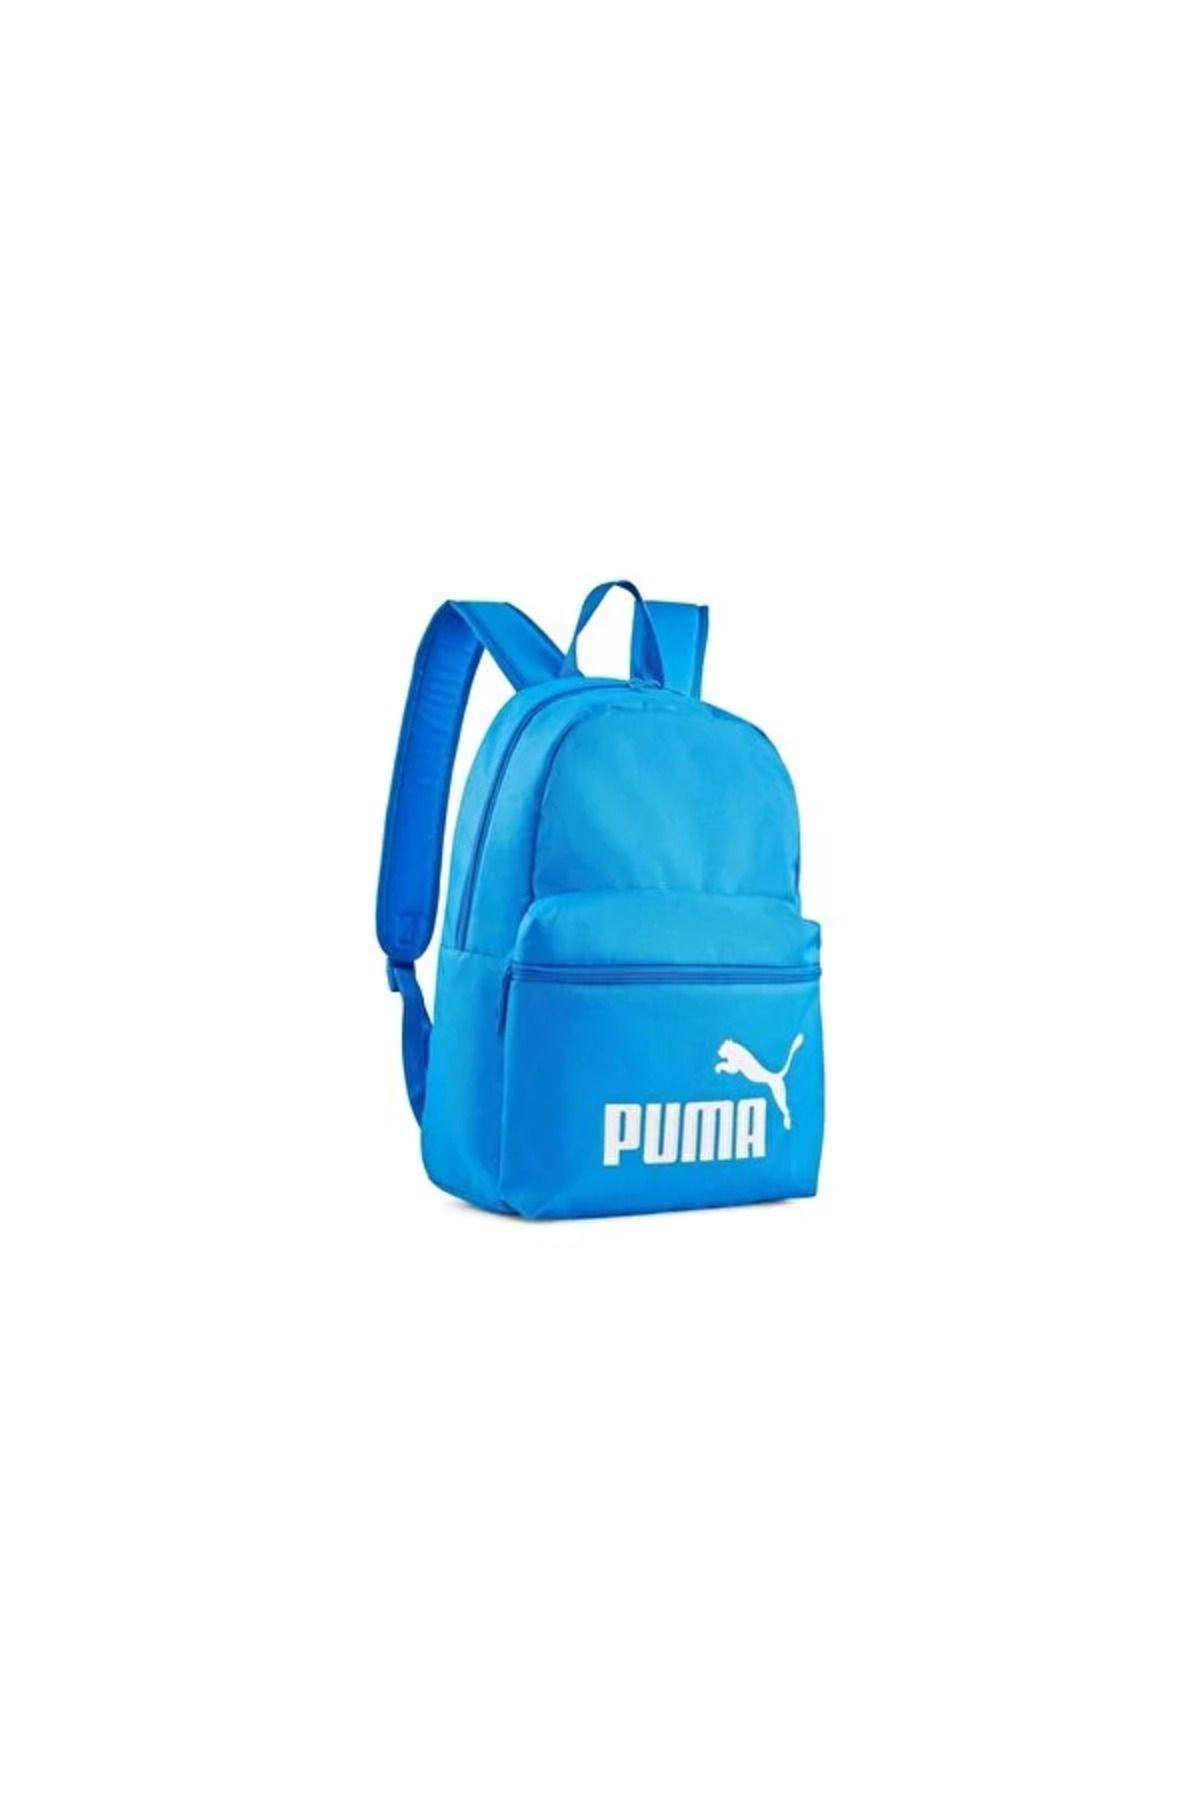 Puma Phase Backpack07994313